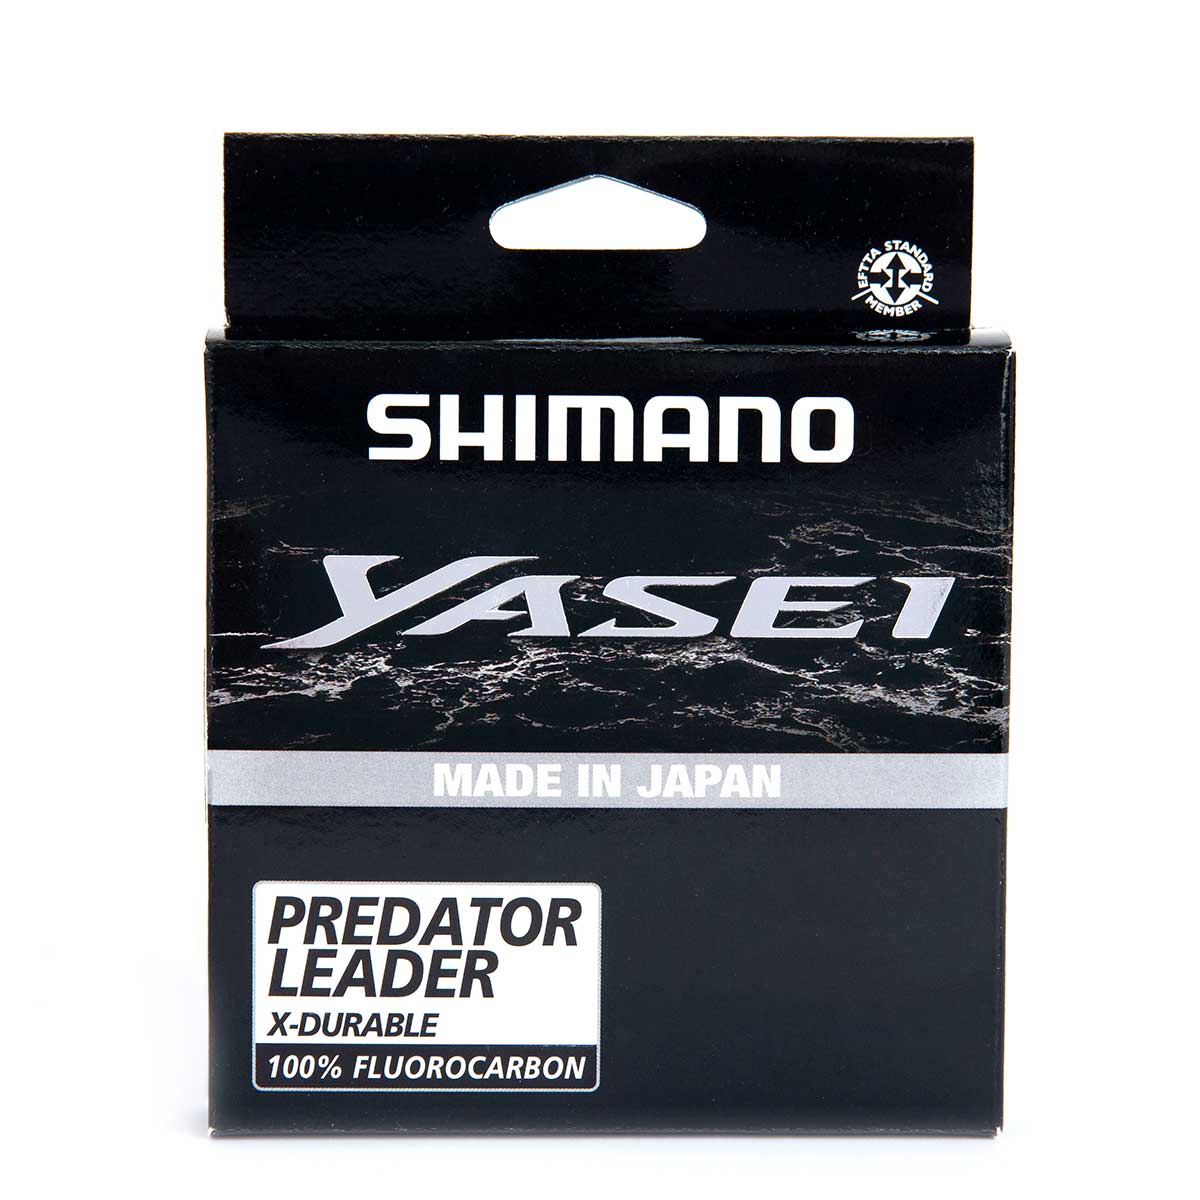 Shimano Yasei Predator 10 Metre Flourocarbon Misina, derinsu avlarınızda %100 görünmezlik etkisiyle japonya üretimli flourocarbon misina serisi